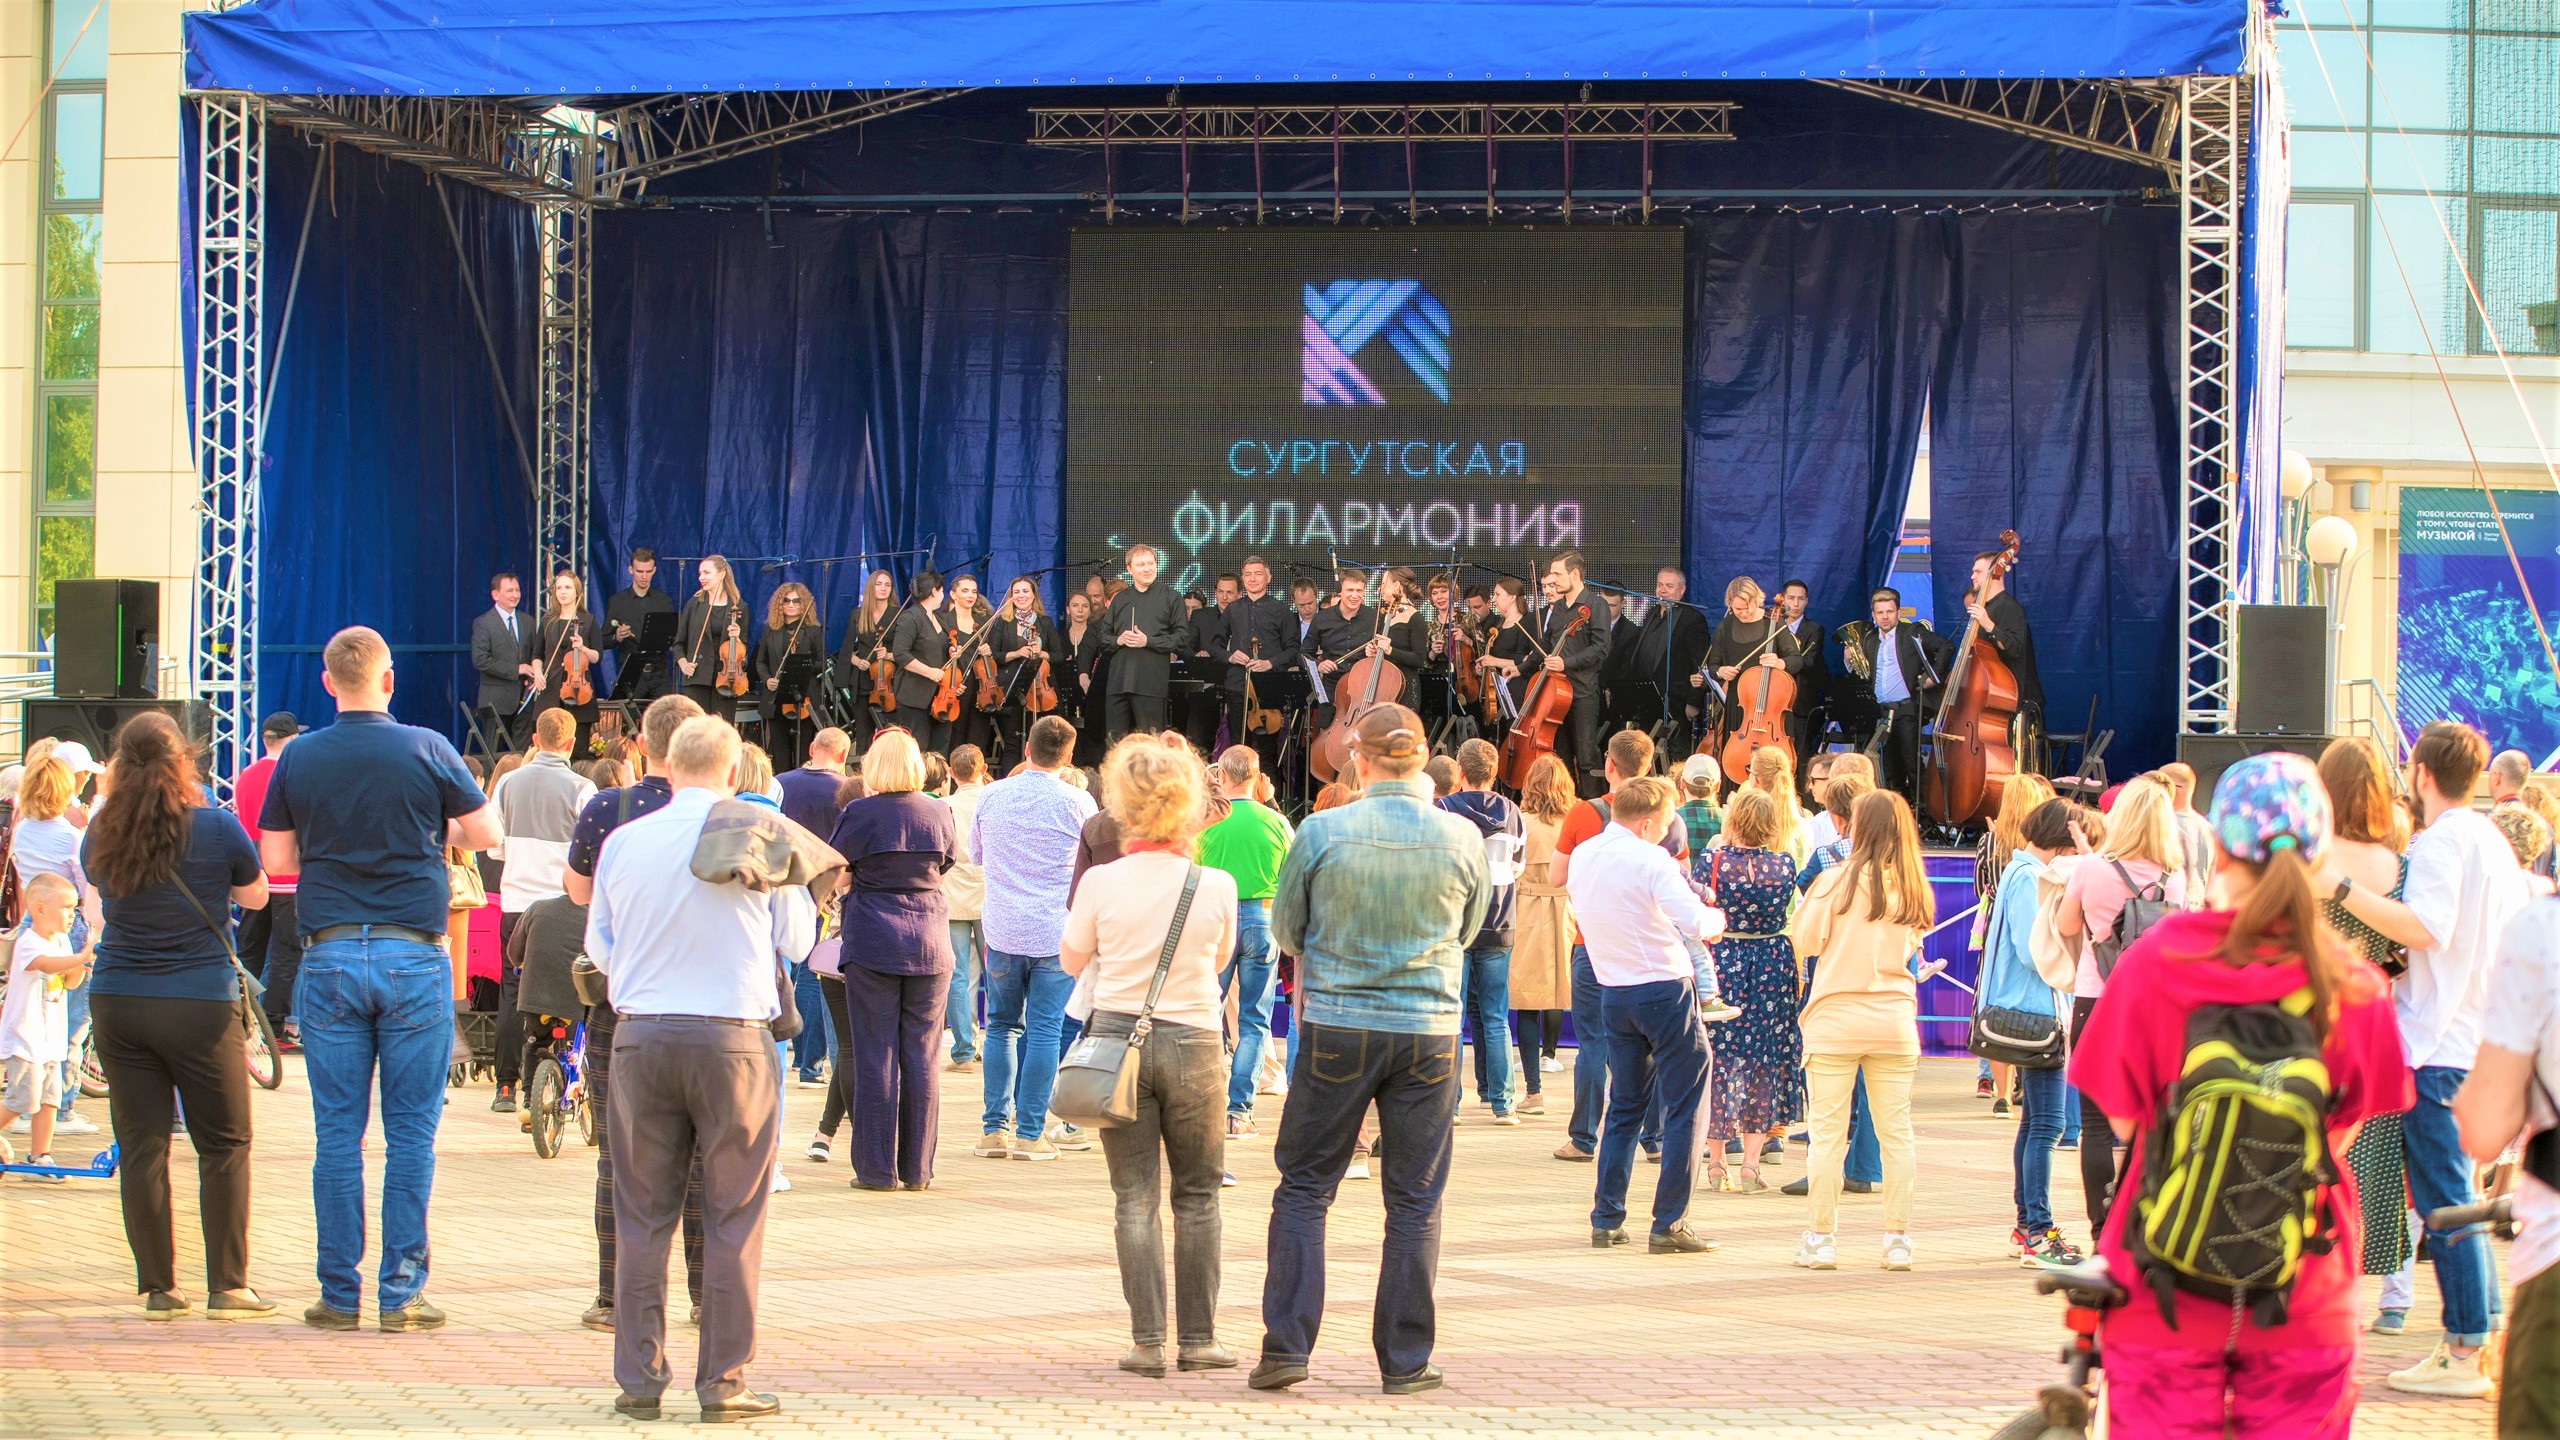 Сургутская филармония открывает сезон летних концертов под открытым небом